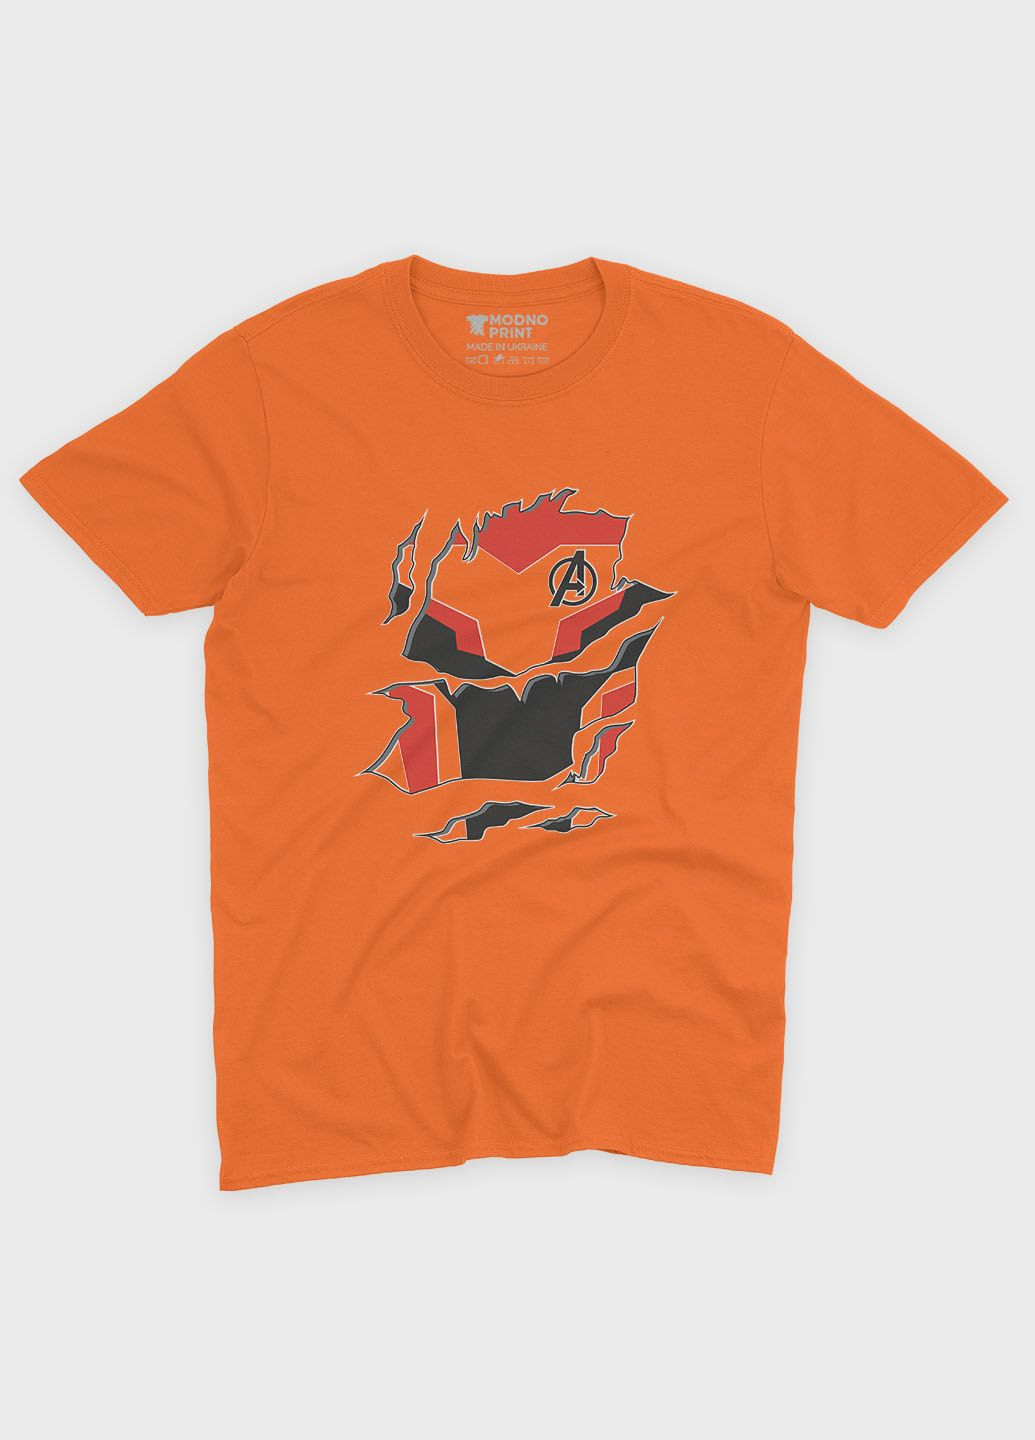 Оранжевая демисезонная футболка для девочки с принтом супергероя - железный человек (ts001-1-ora-006-016-006-g) Modno